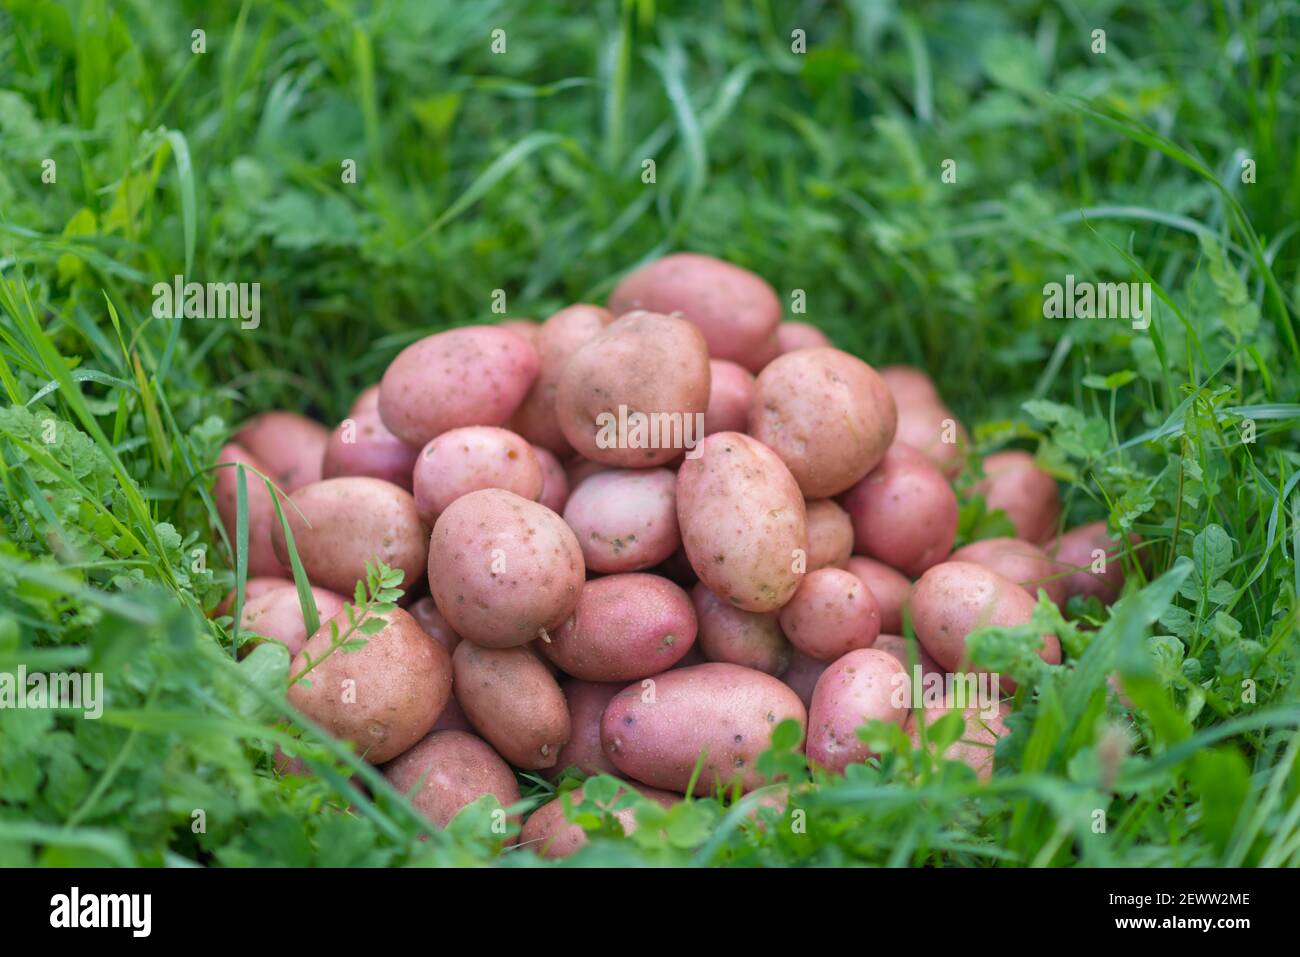 Pila de patatas recién cosechadas y lavadas - Solanum tuberosum sobre hierba. Cosecha de raíces de papa en el jardín casero. Agricultura orgánica, alimentos saludables, B Foto de stock